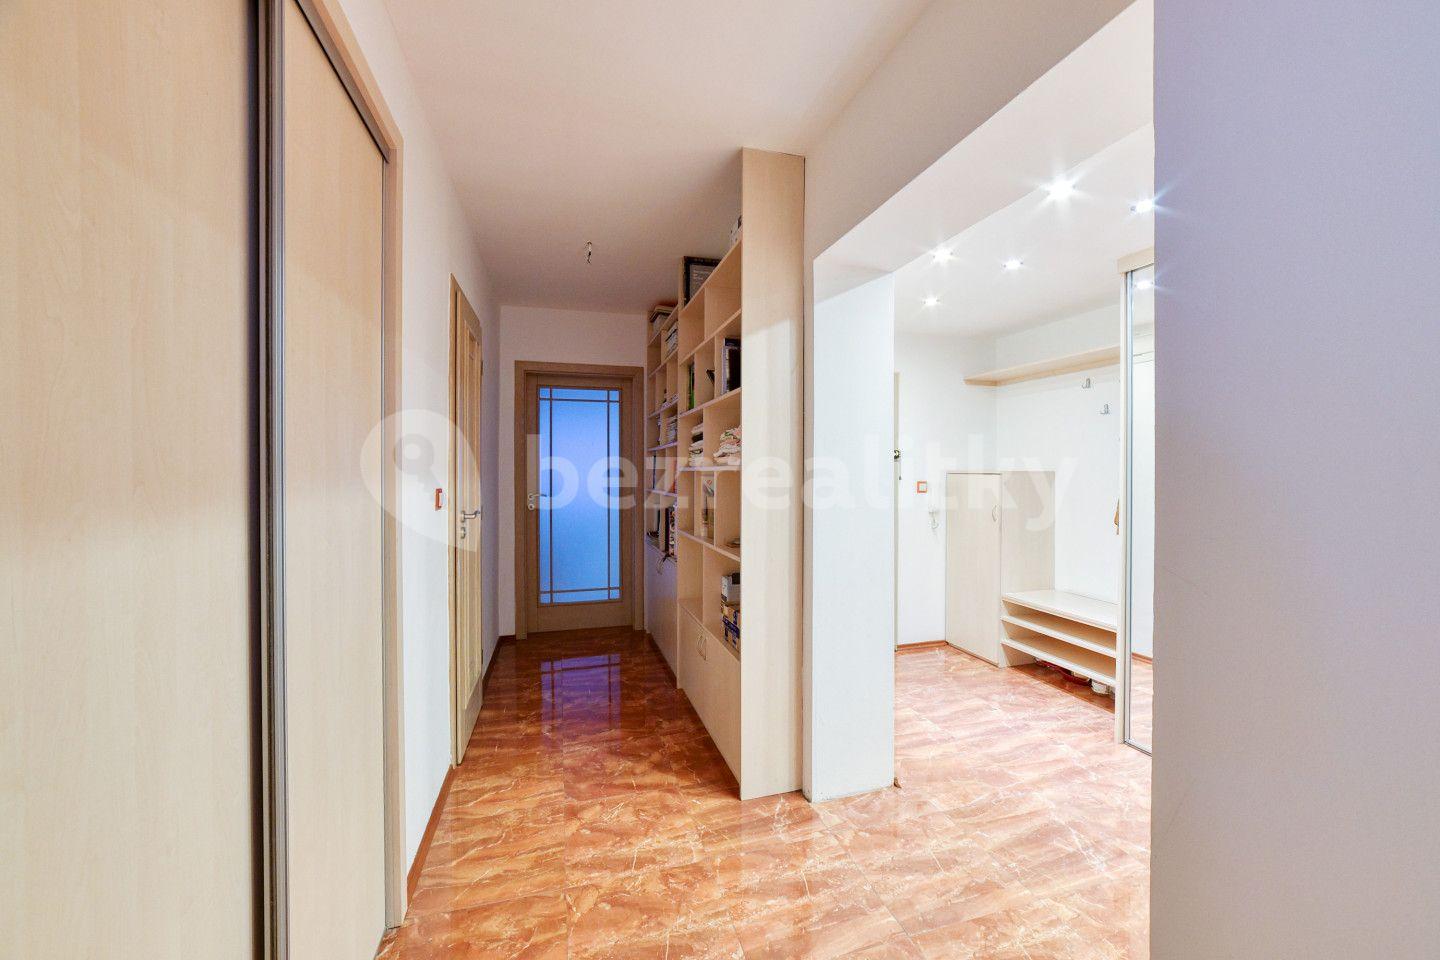 3 bedroom flat for sale, 92 m², Hlavní třída, Mariánské Lázně, Karlovarský Region